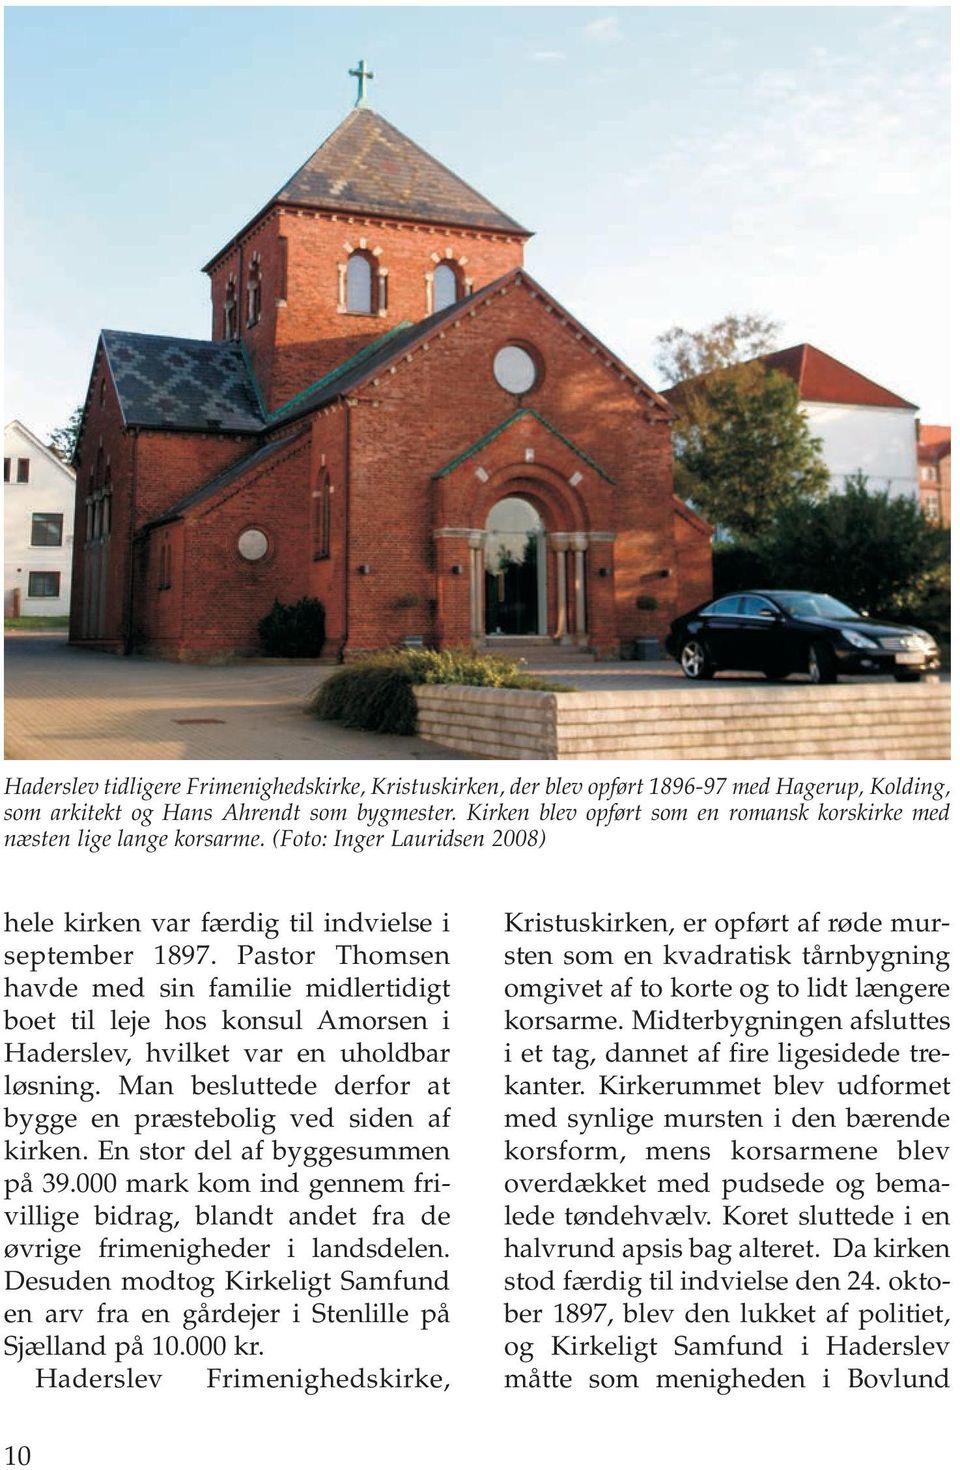 Pastor Thomsen havde med sin familie midlertidigt boet til leje hos konsul Amorsen i Haderslev, hvilket var en uholdbar løsning. Man besluttede derfor at bygge en præstebolig ved siden af kirken.